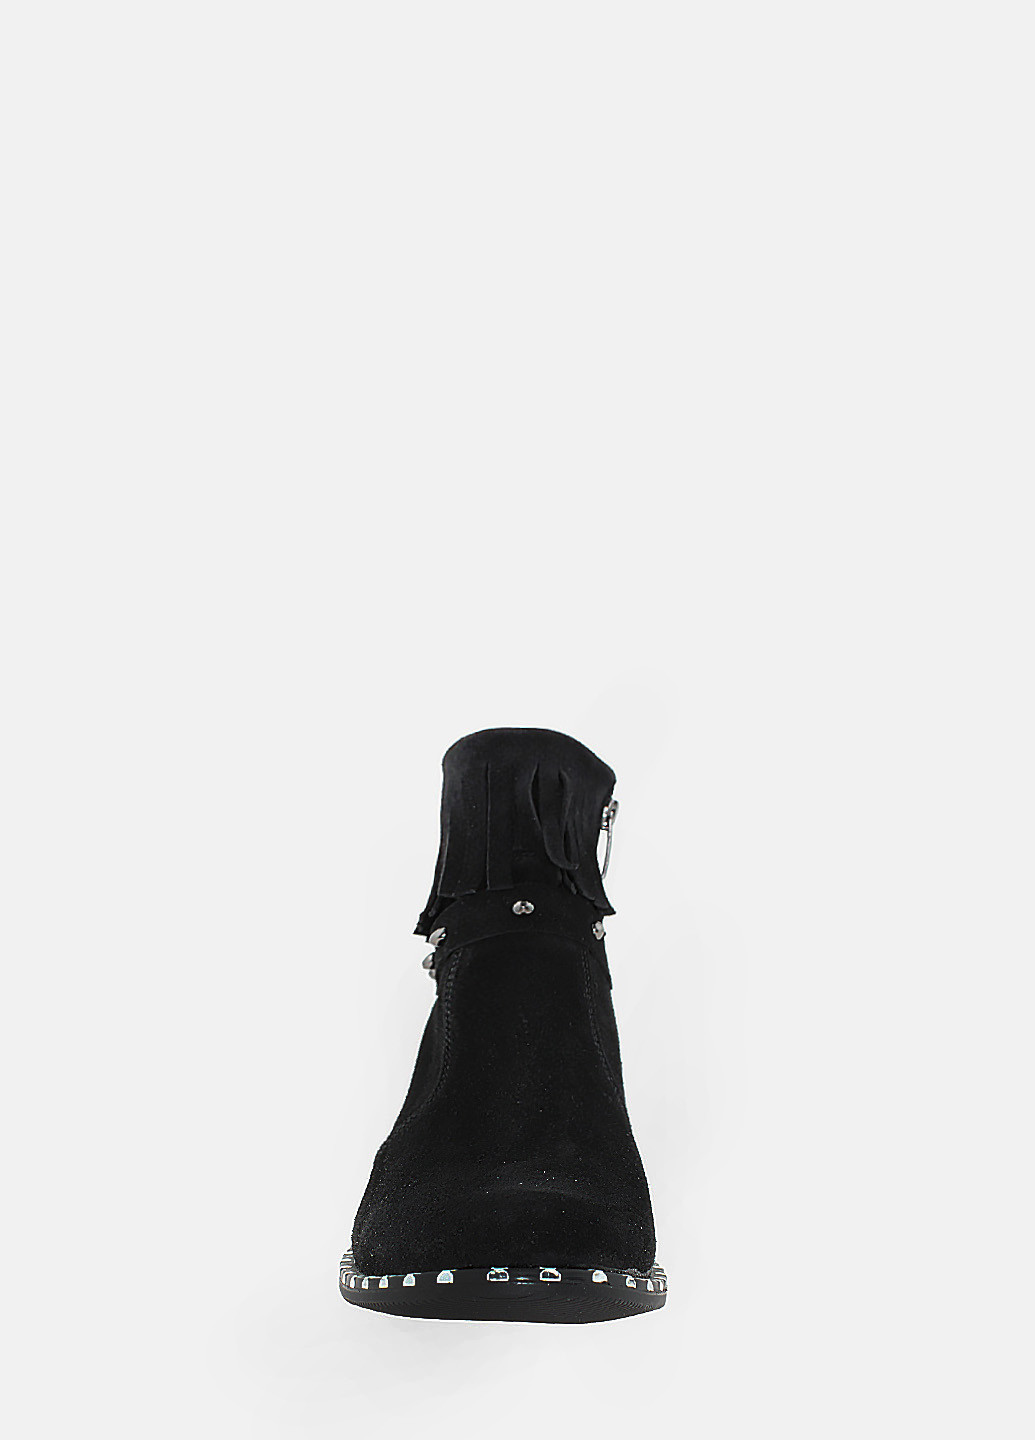 Осенние ботинки rv736-11 черный Sam Vit из натуральной замши